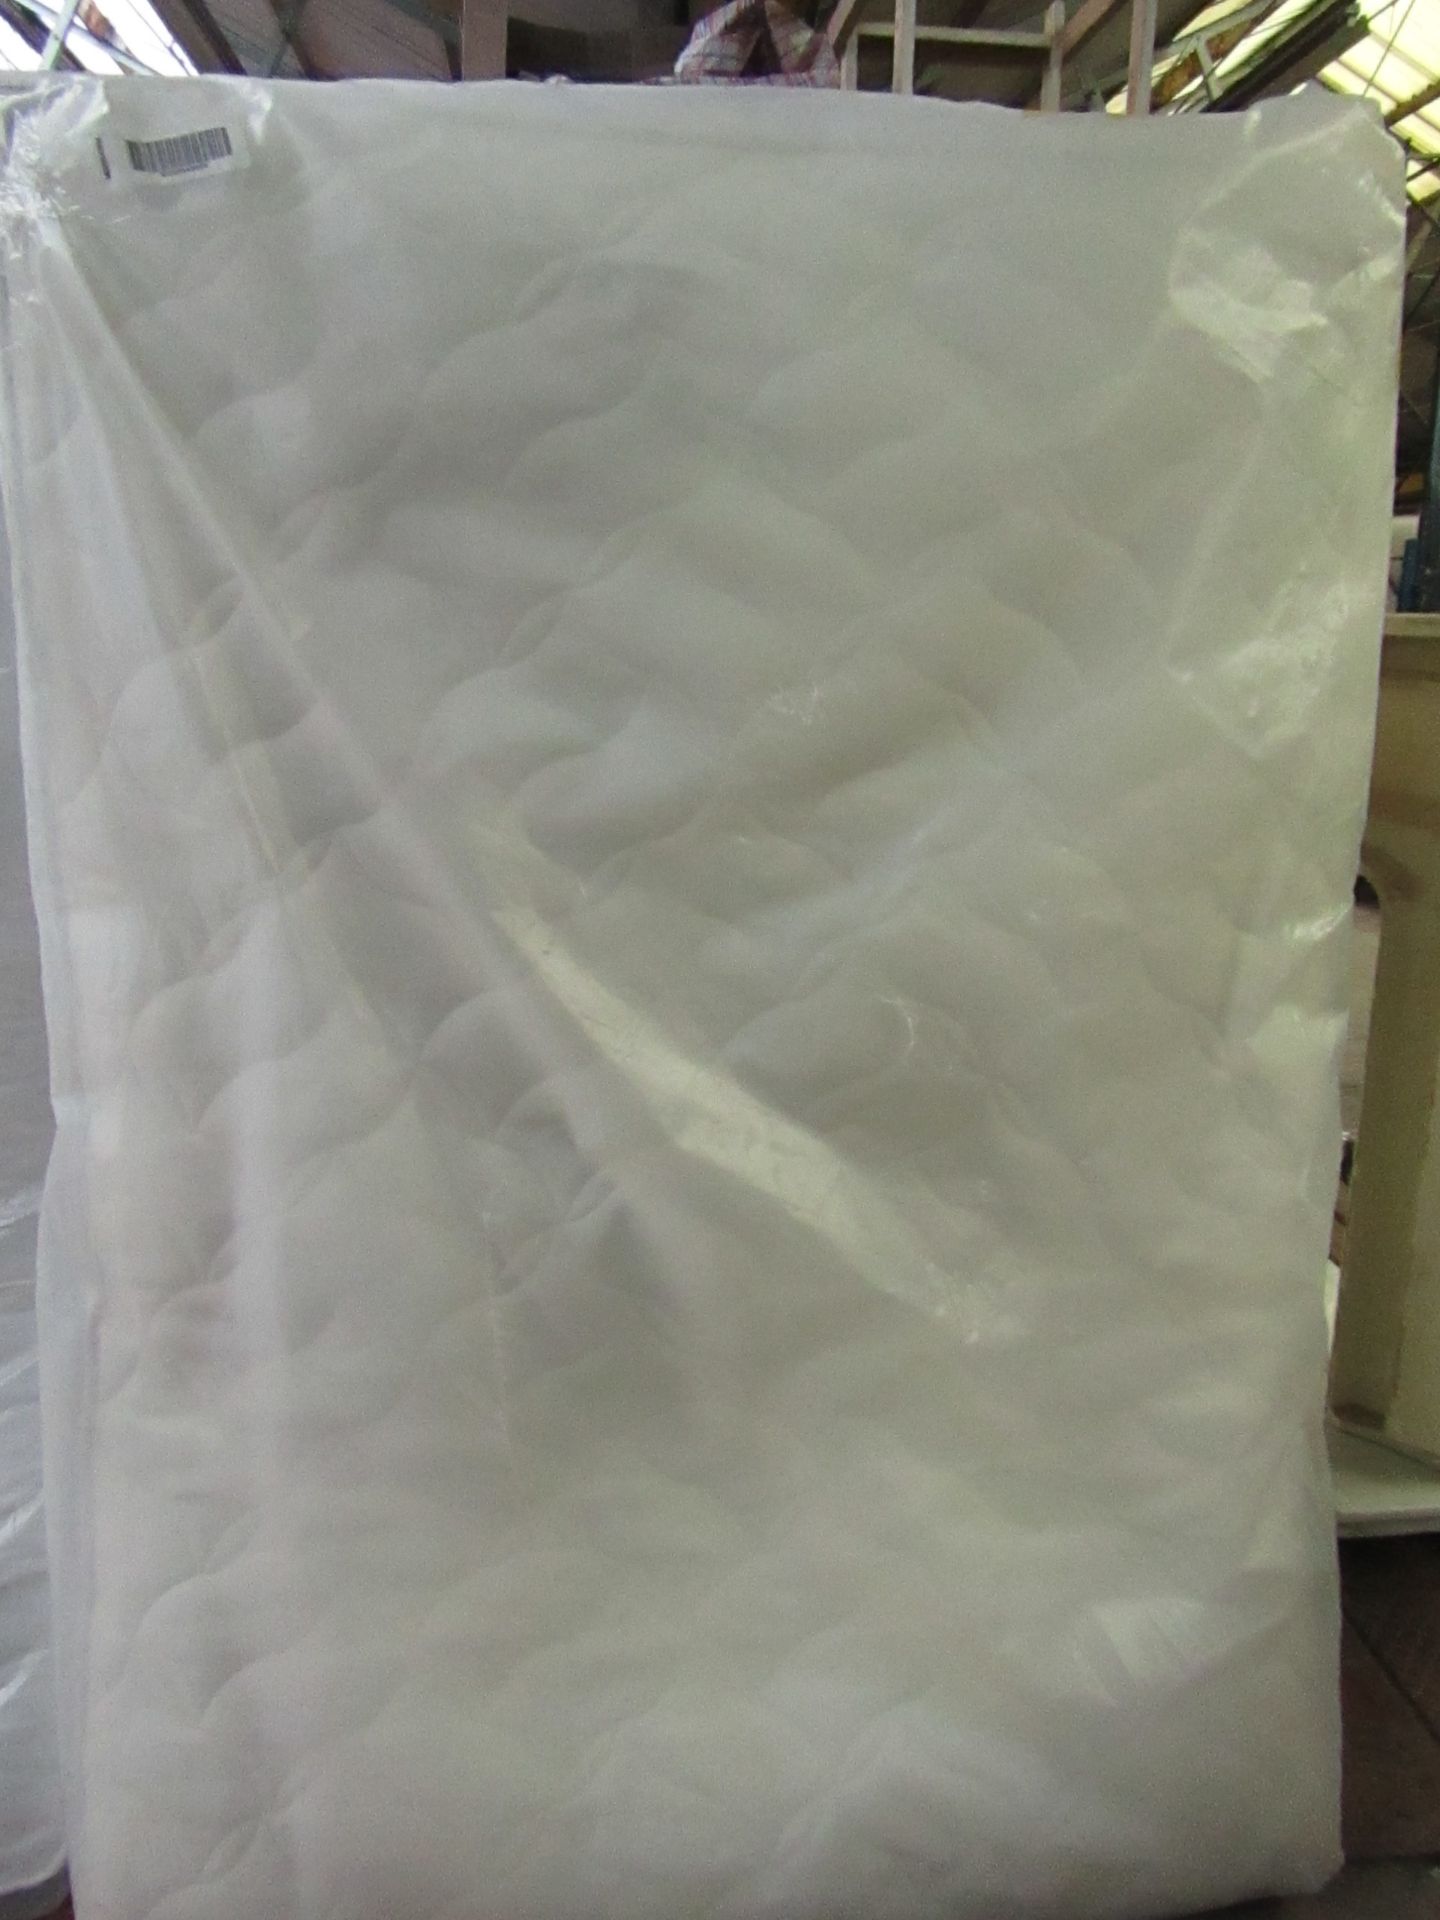 Double sized memory foam mattress 135 x 190, in packaging.